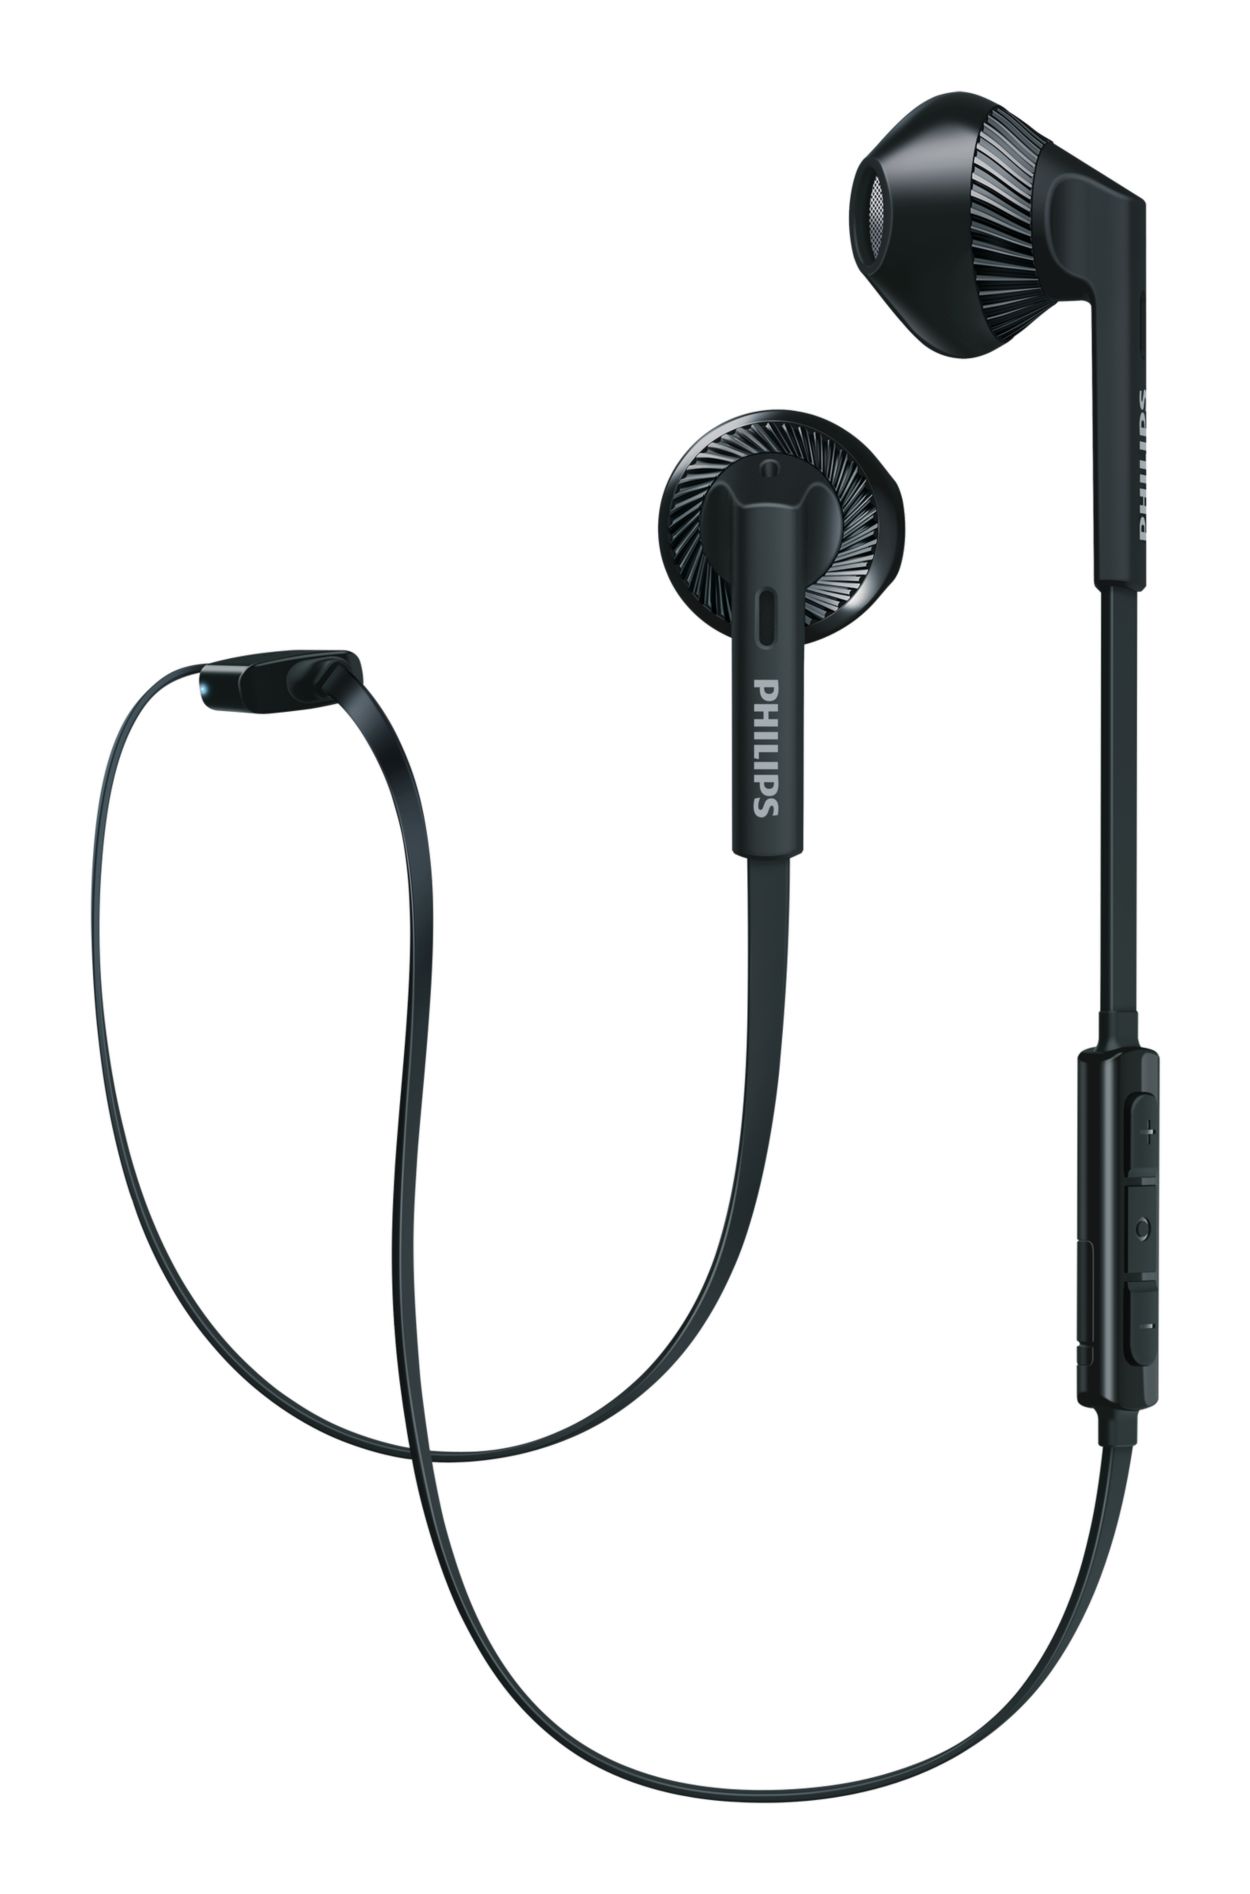 je bent Schuldenaar landheer Bluetooth Headset SHB5250BK/27 | Philips